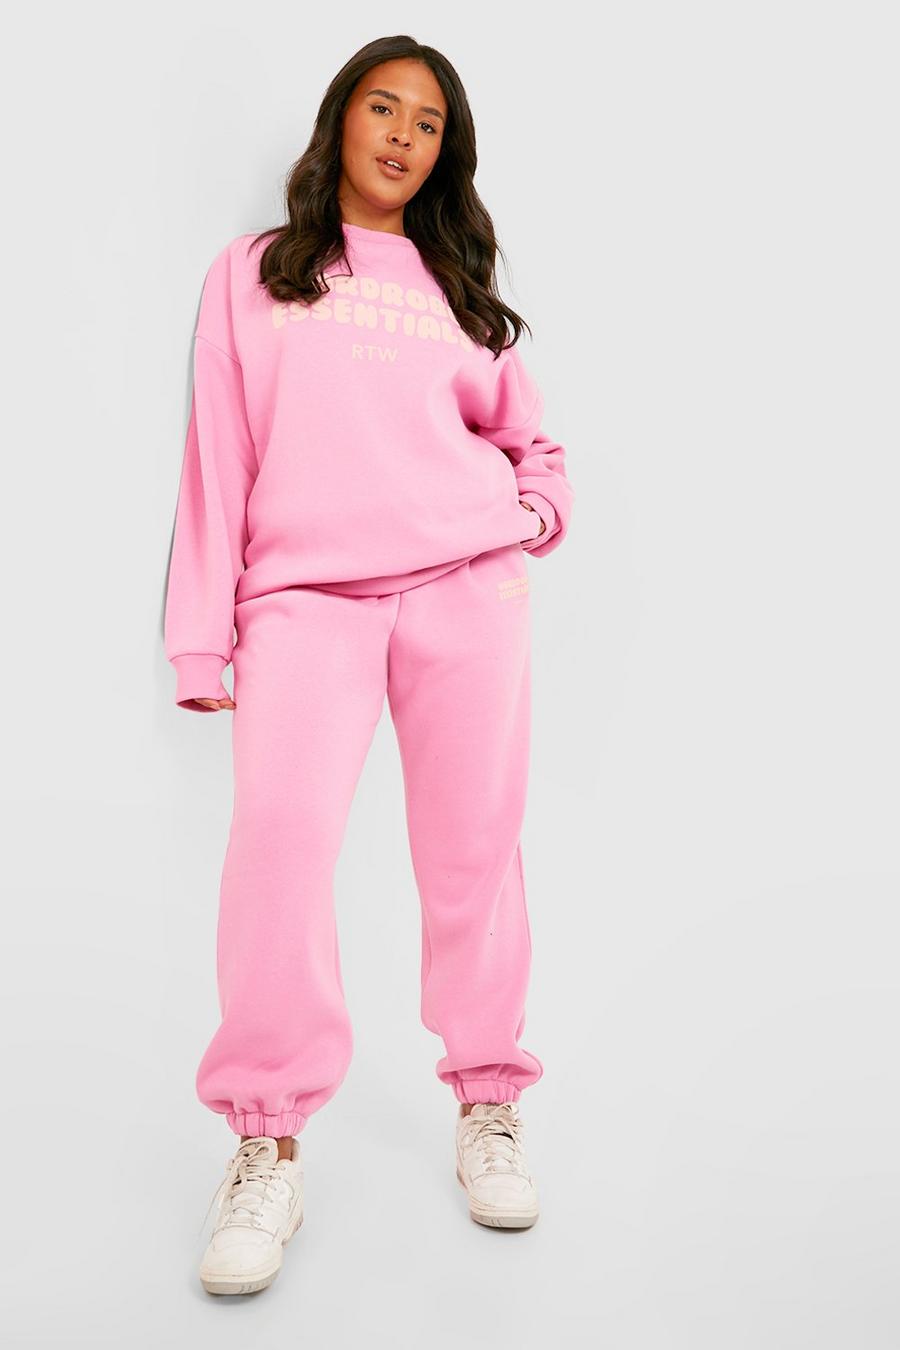 Tuta sportiva in felpa Plus Size con slogan Wardrobe Essentials, Pink rosa